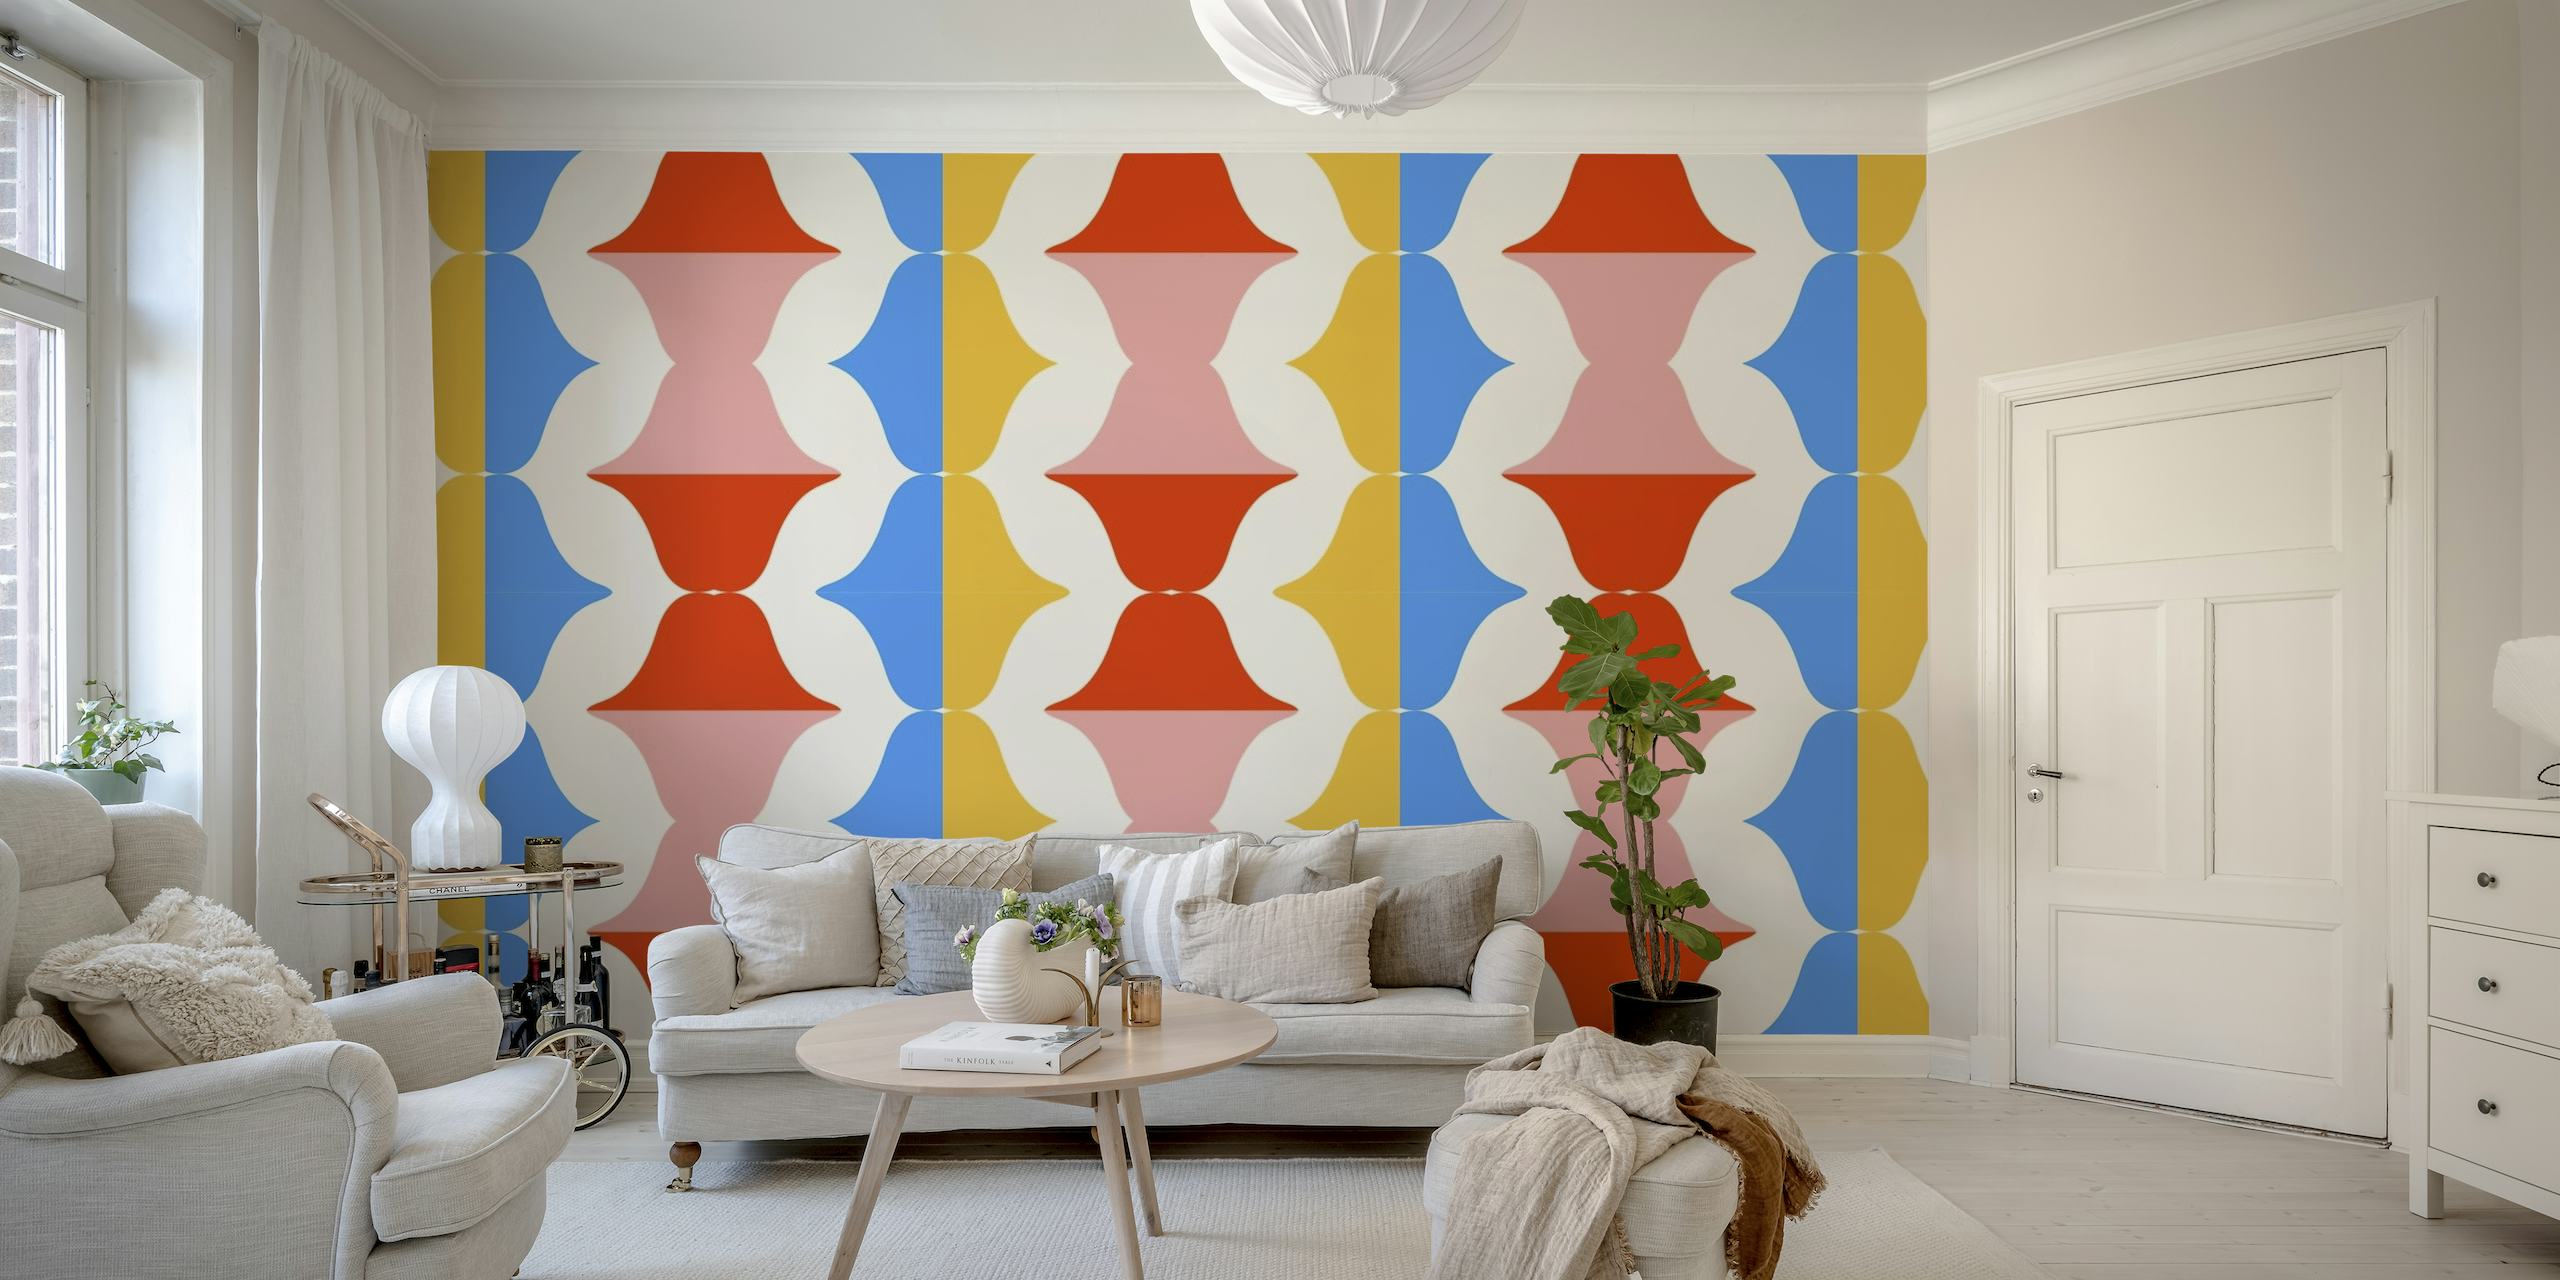 Retro inspiriran zidni mural s uzorkom usana u pop art stilu na geometrijskoj plavoj, narančastoj i ružičastoj pozadini.